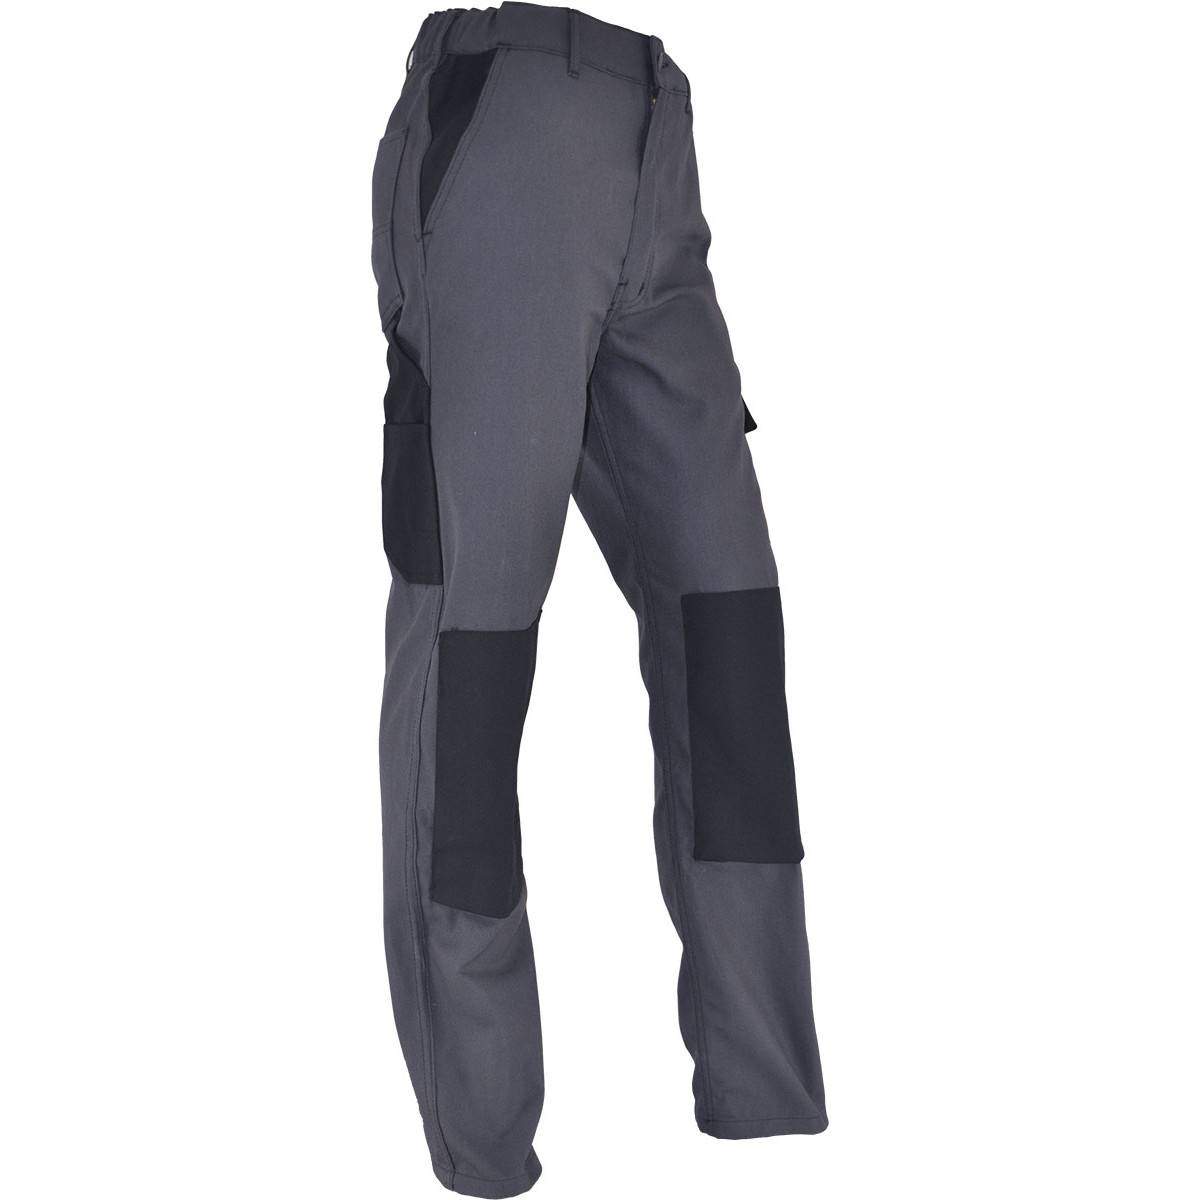 PMPC pantaloni da lavoro comfort taglia 42, grigio antracite